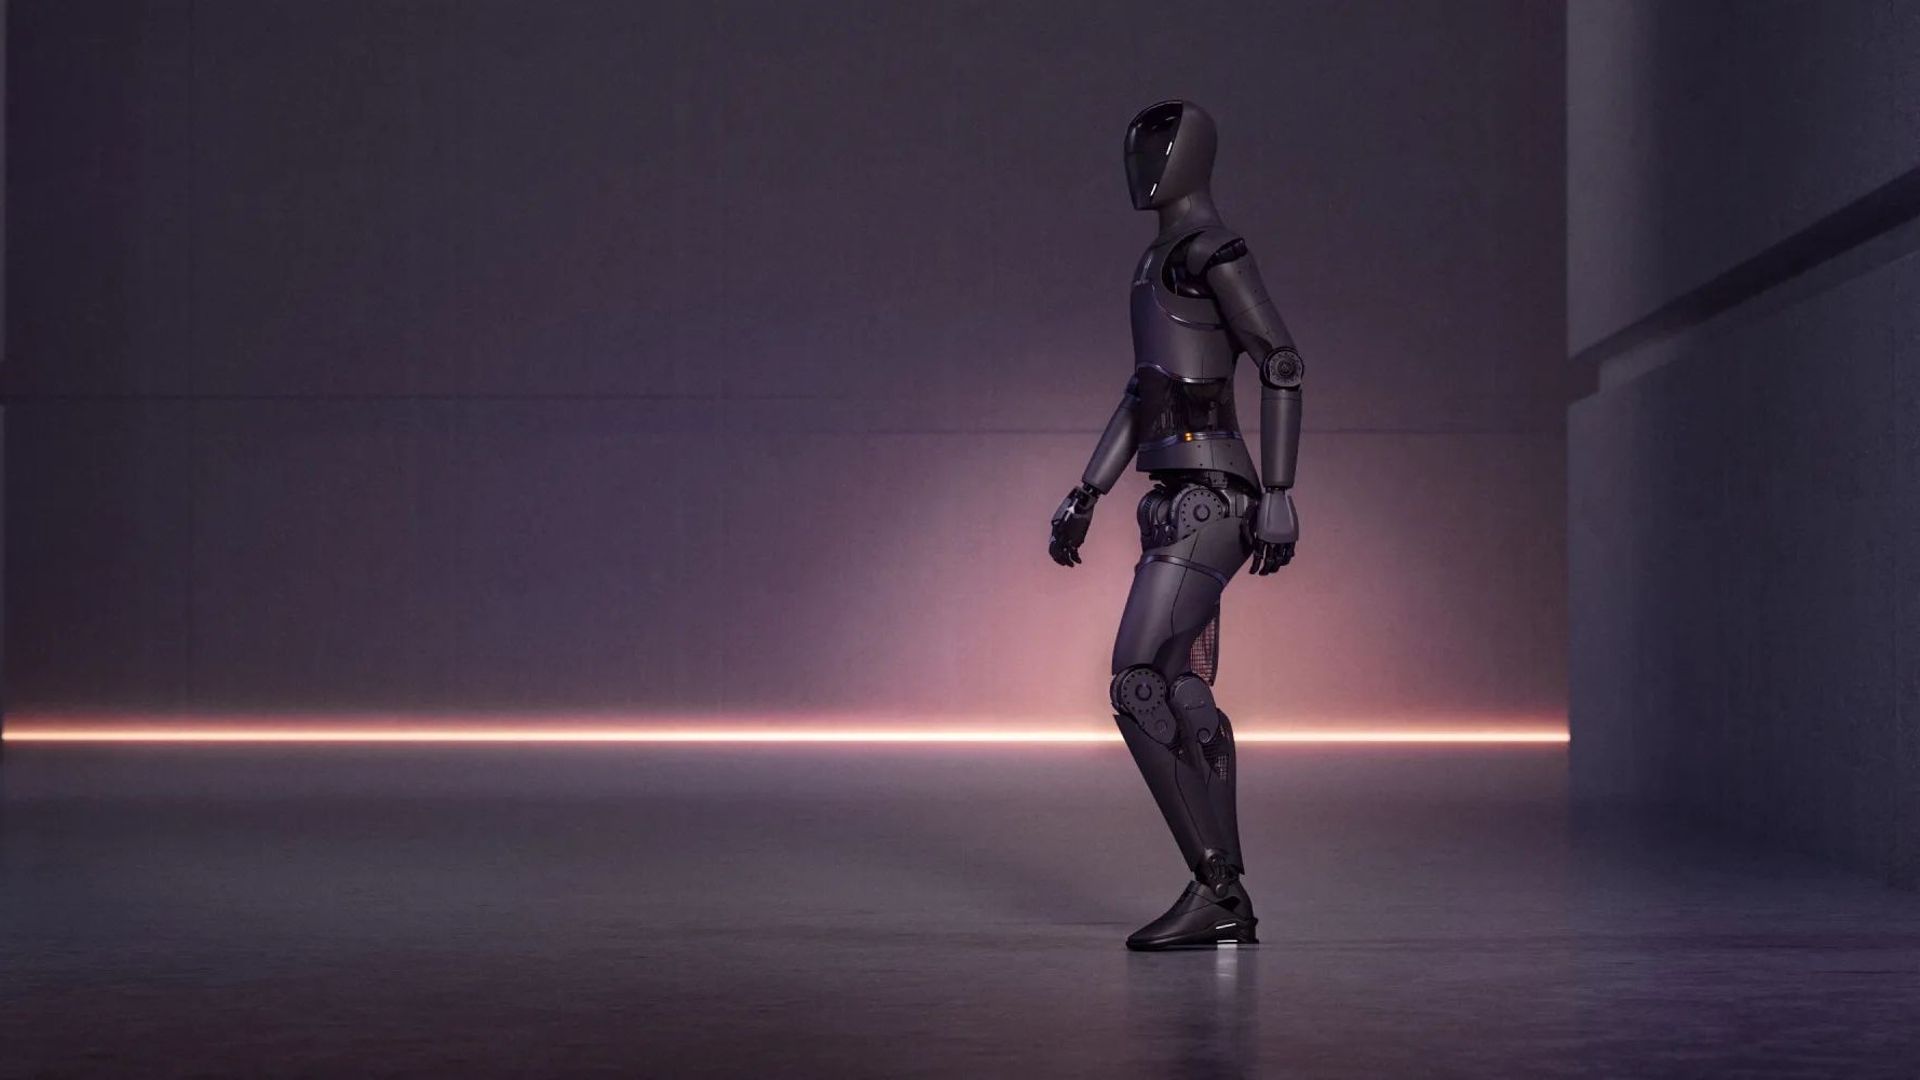 Ce robot humanoïde intelligent s'annonce comme le plus évolué jamais créé.